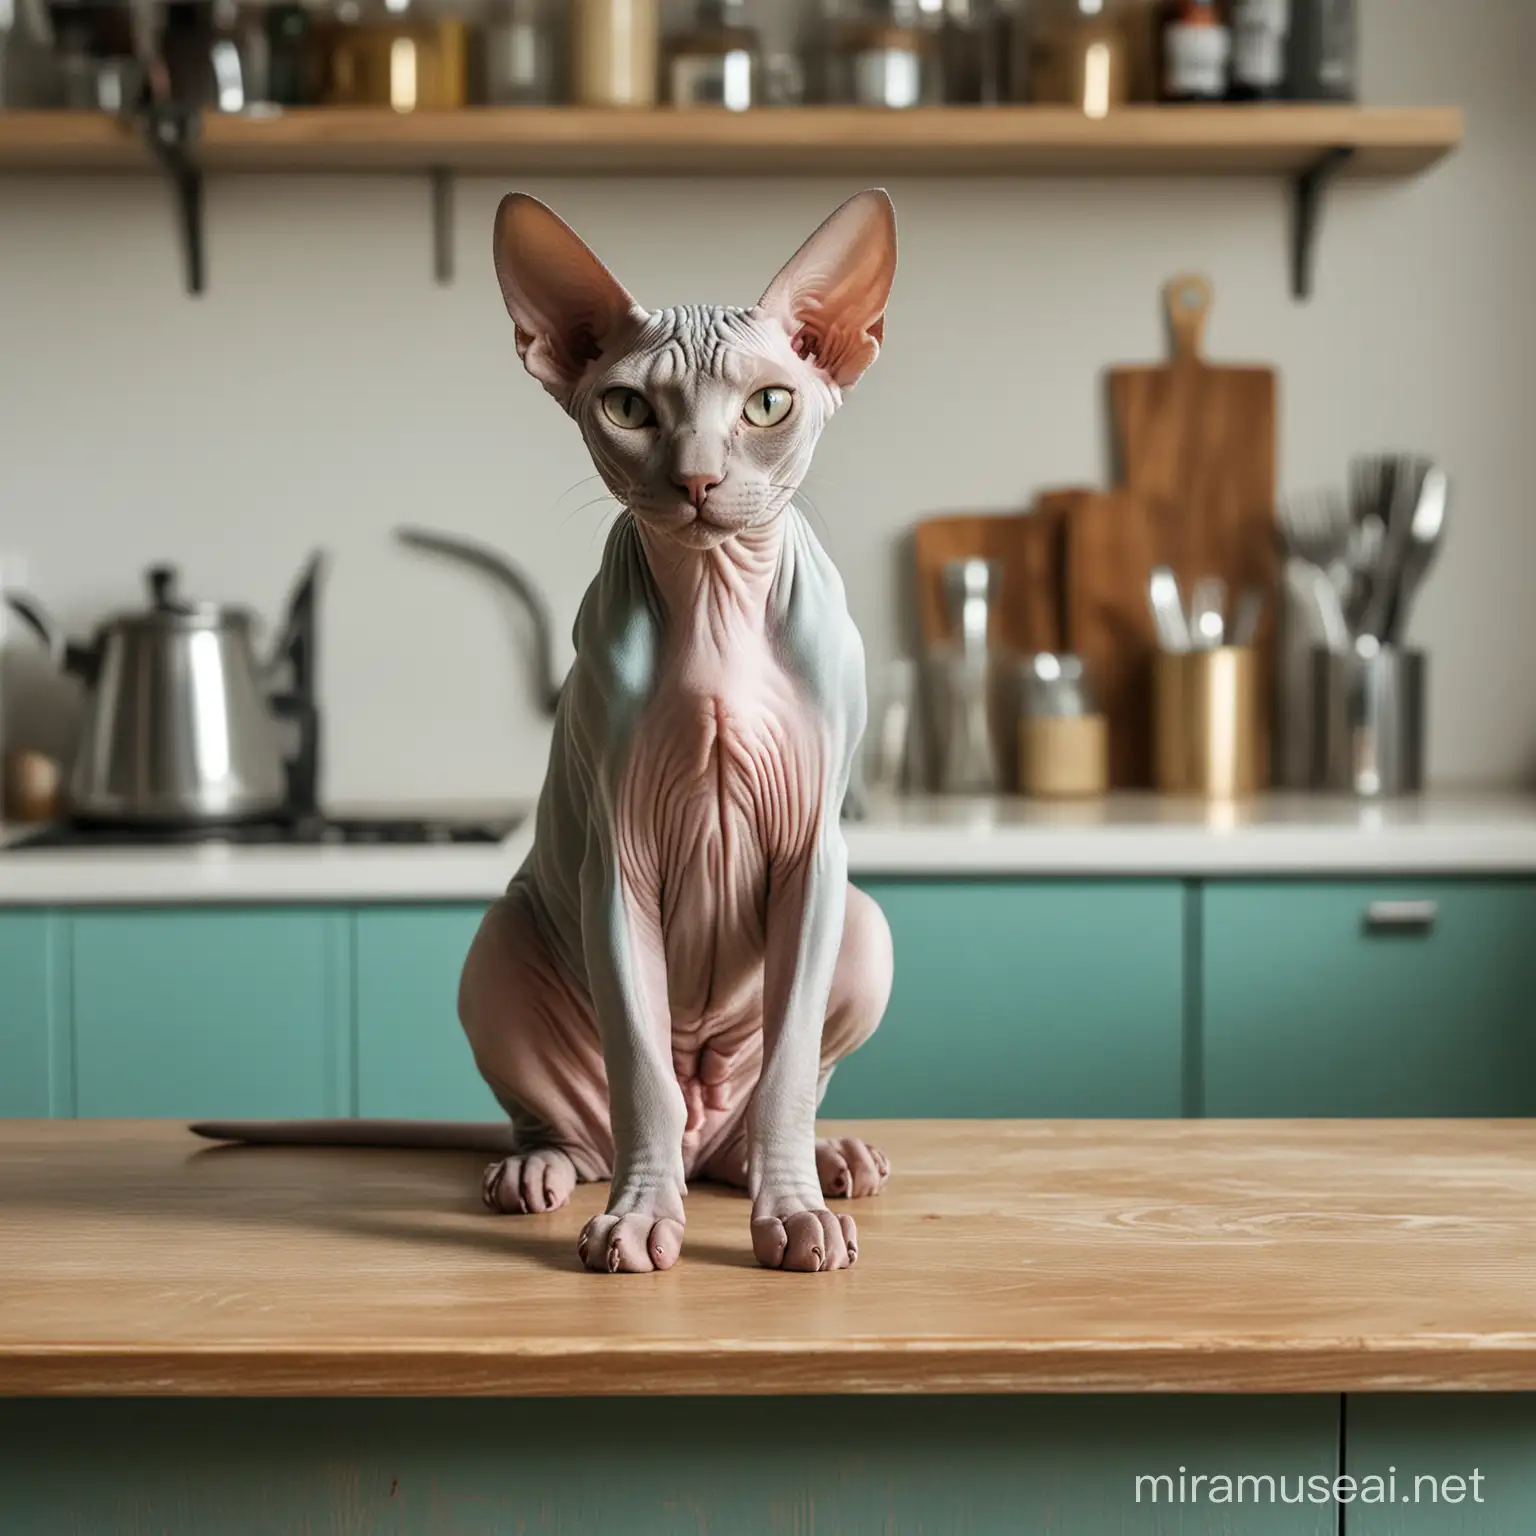 Кот породы сфинкс сидит на барной стойке на кухне в бирюзовых тонах